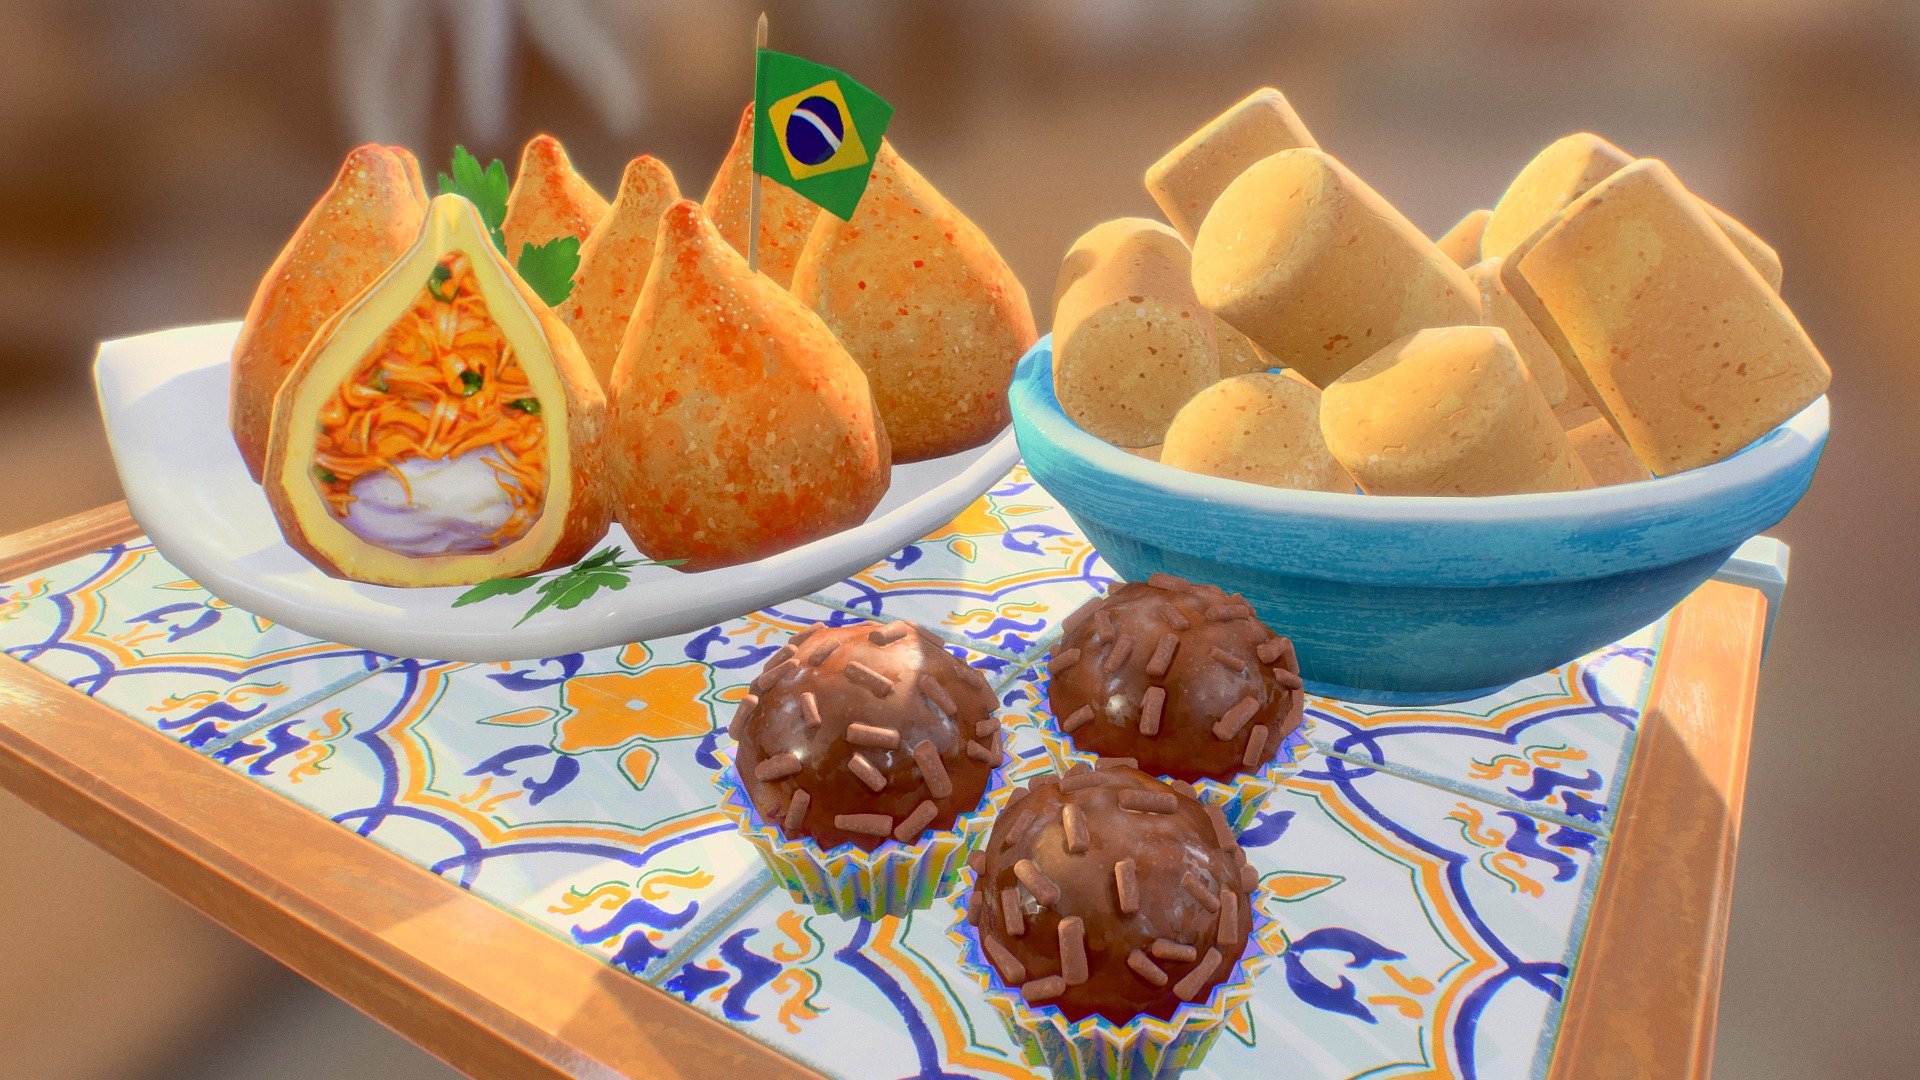 Low Poly Brazilian Food - 3D model by anacco [2054273] - Sketchfab